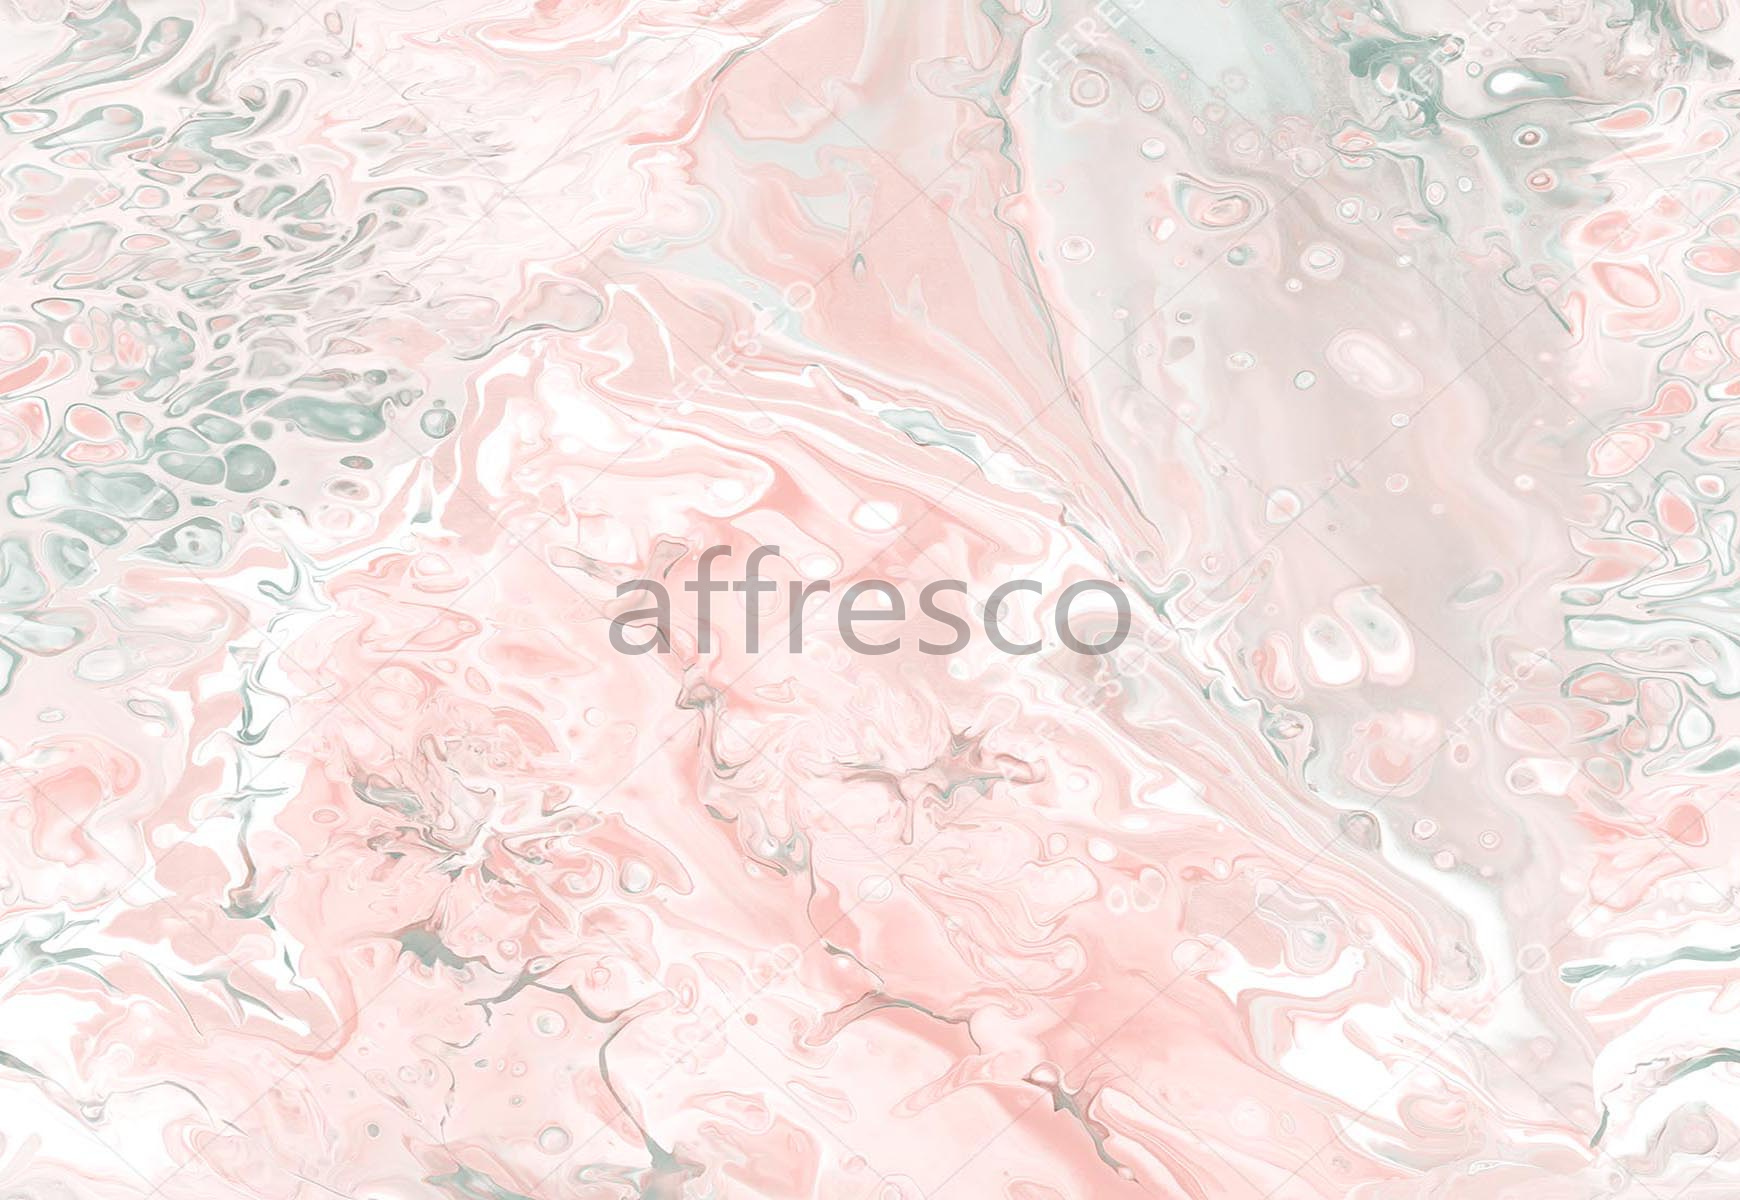 ID139053 | Fluid | Powder effect | Affresco Factory